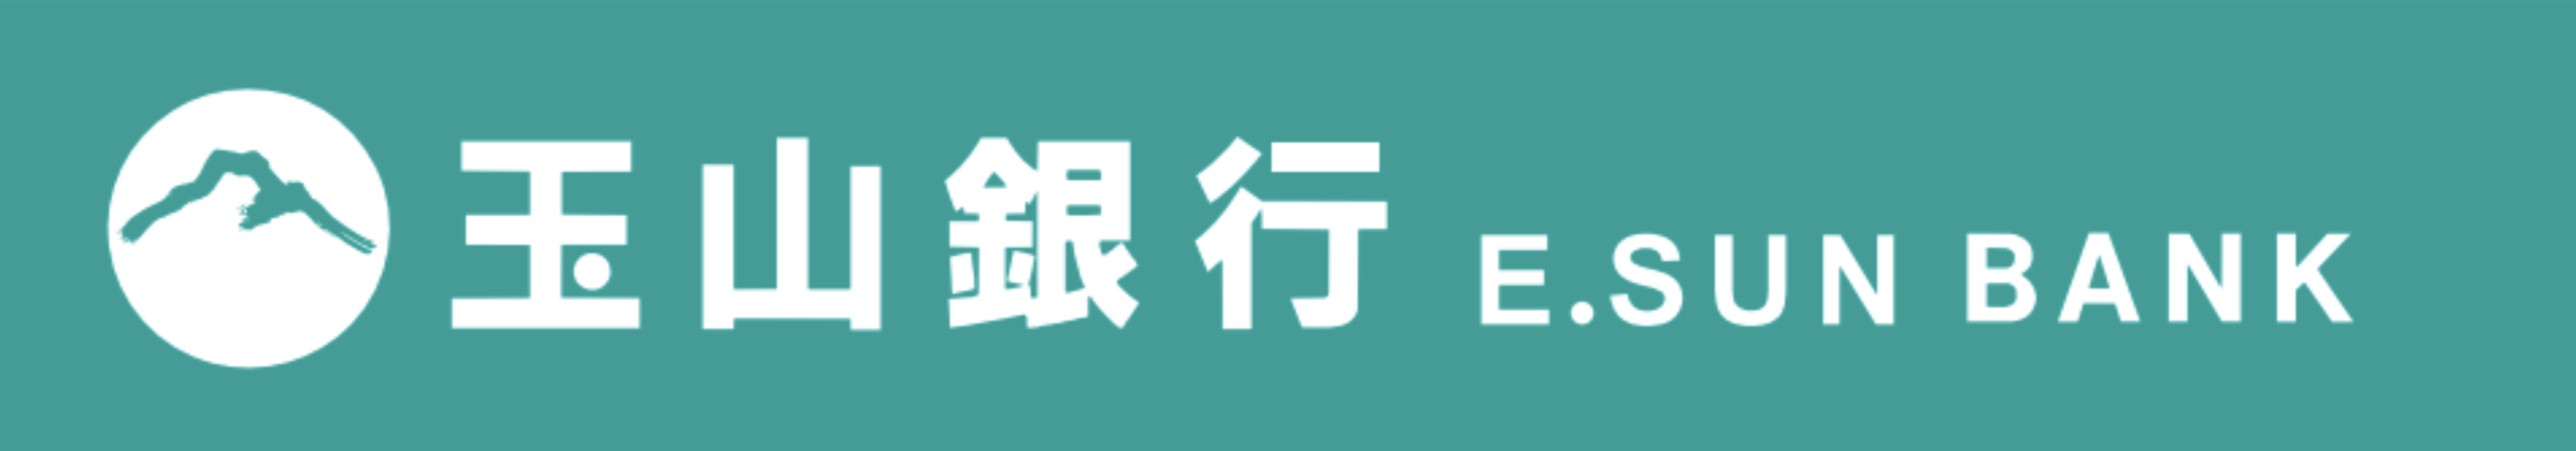 玉山銀行logo